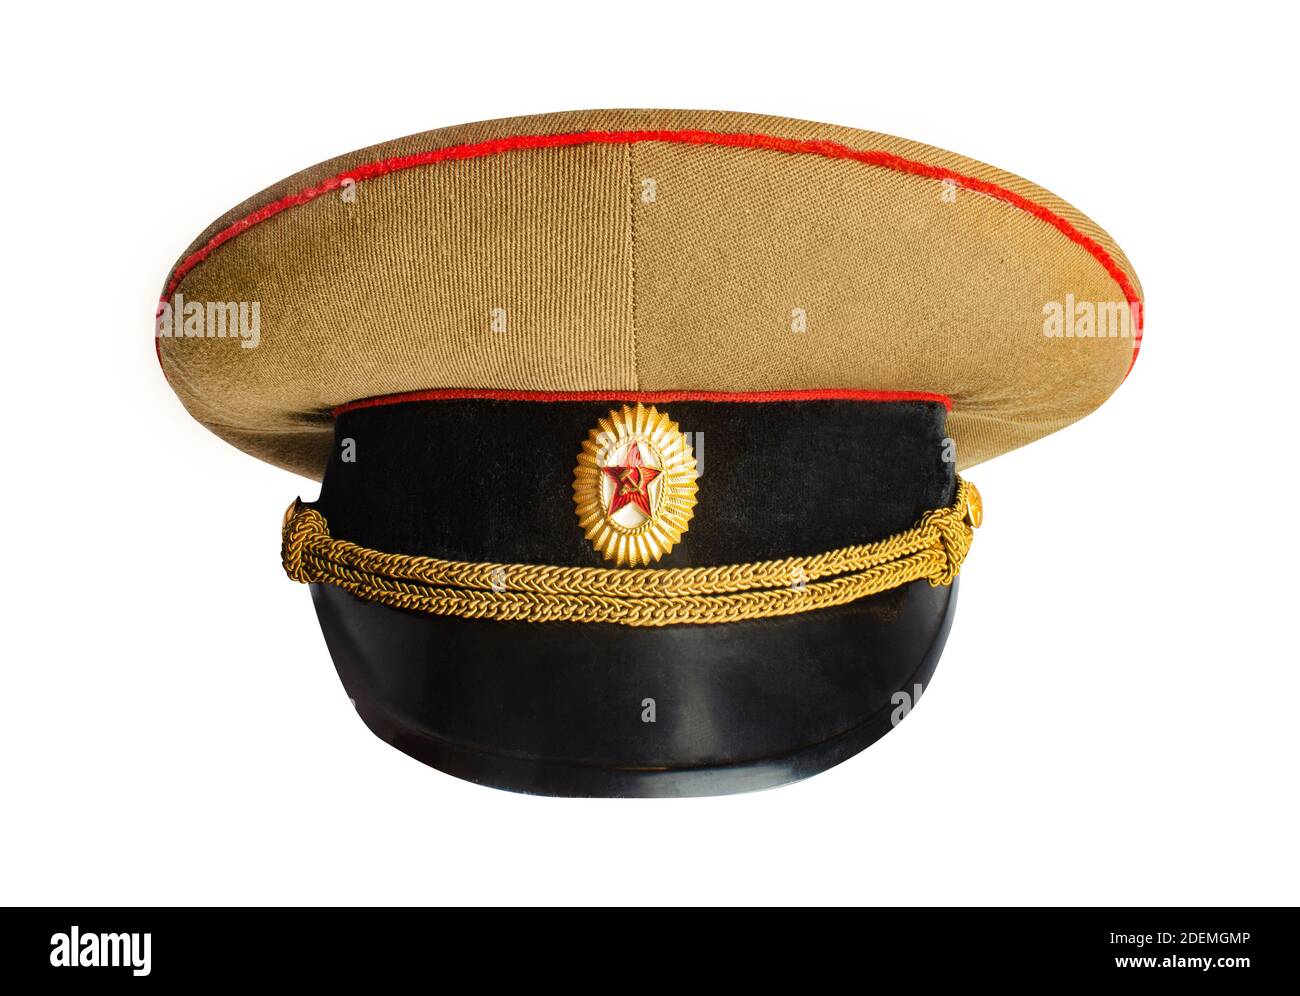 Isoliertes Foto von einem sowjetischen Offizier Militär Höhepunkt Kappe auf weißem Hintergrund. Stockfoto